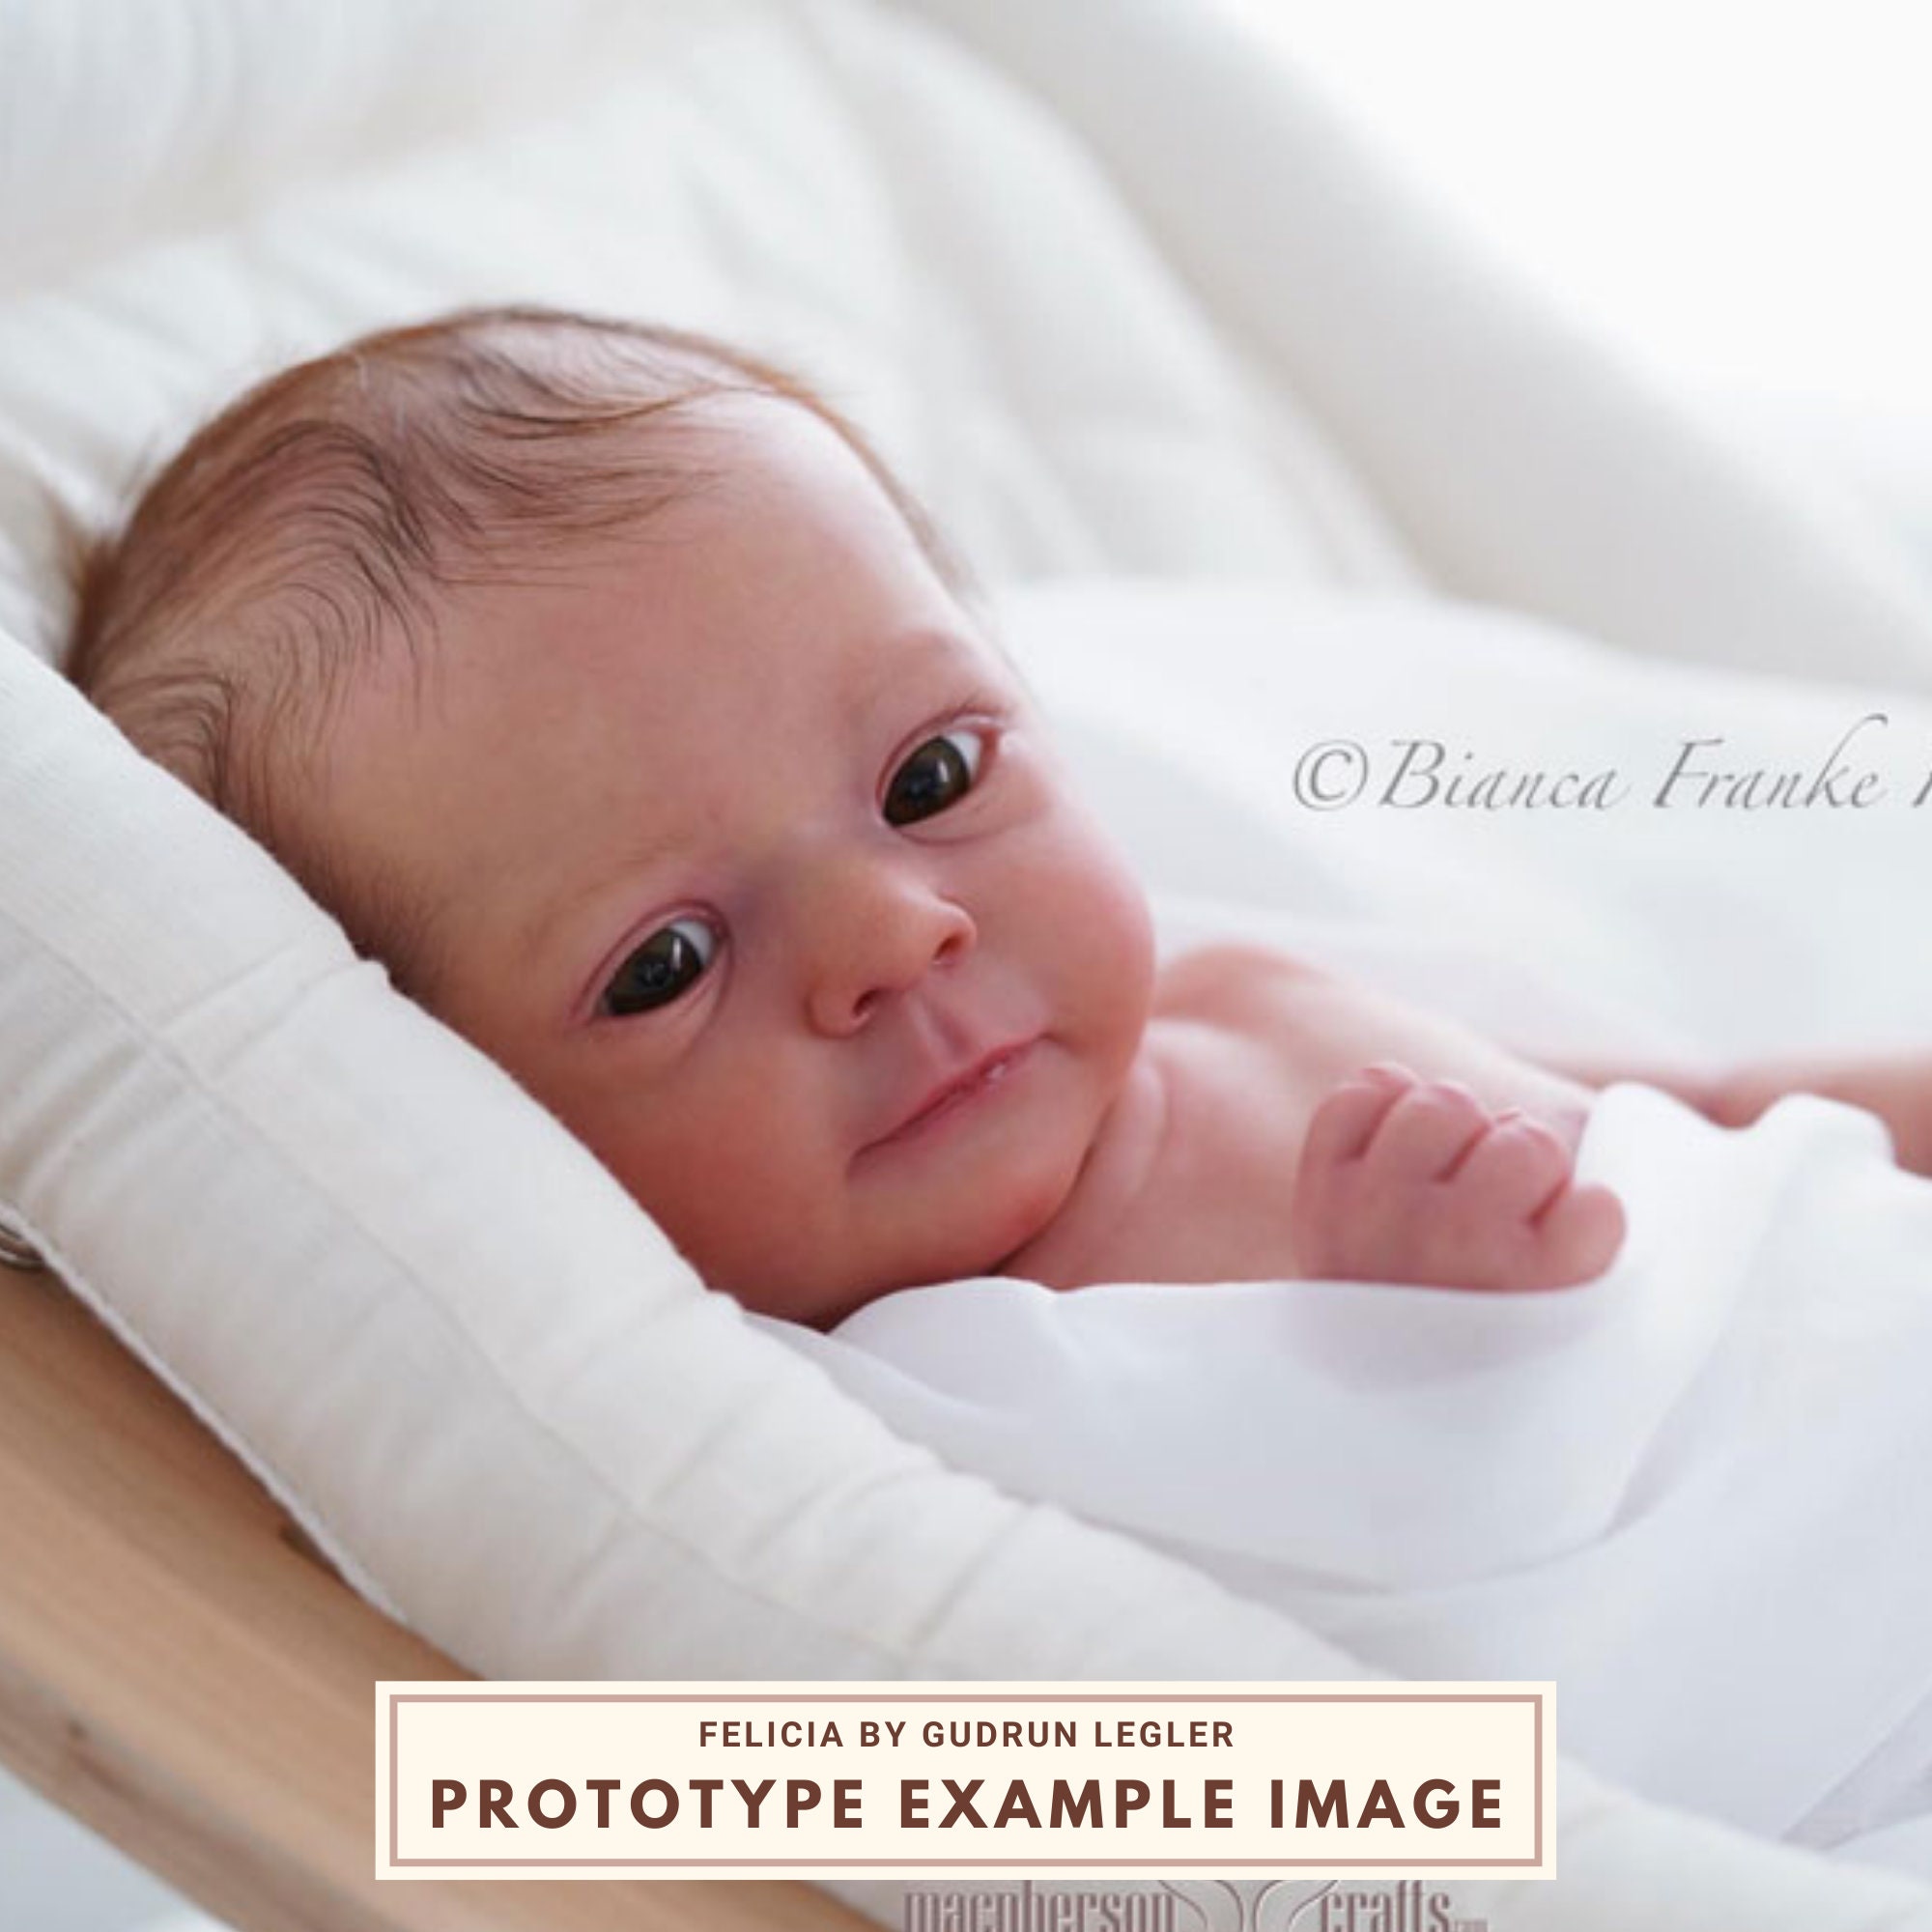 Encontre o Bebê Reborn Perfeito para Você: Artesanato Impecável e